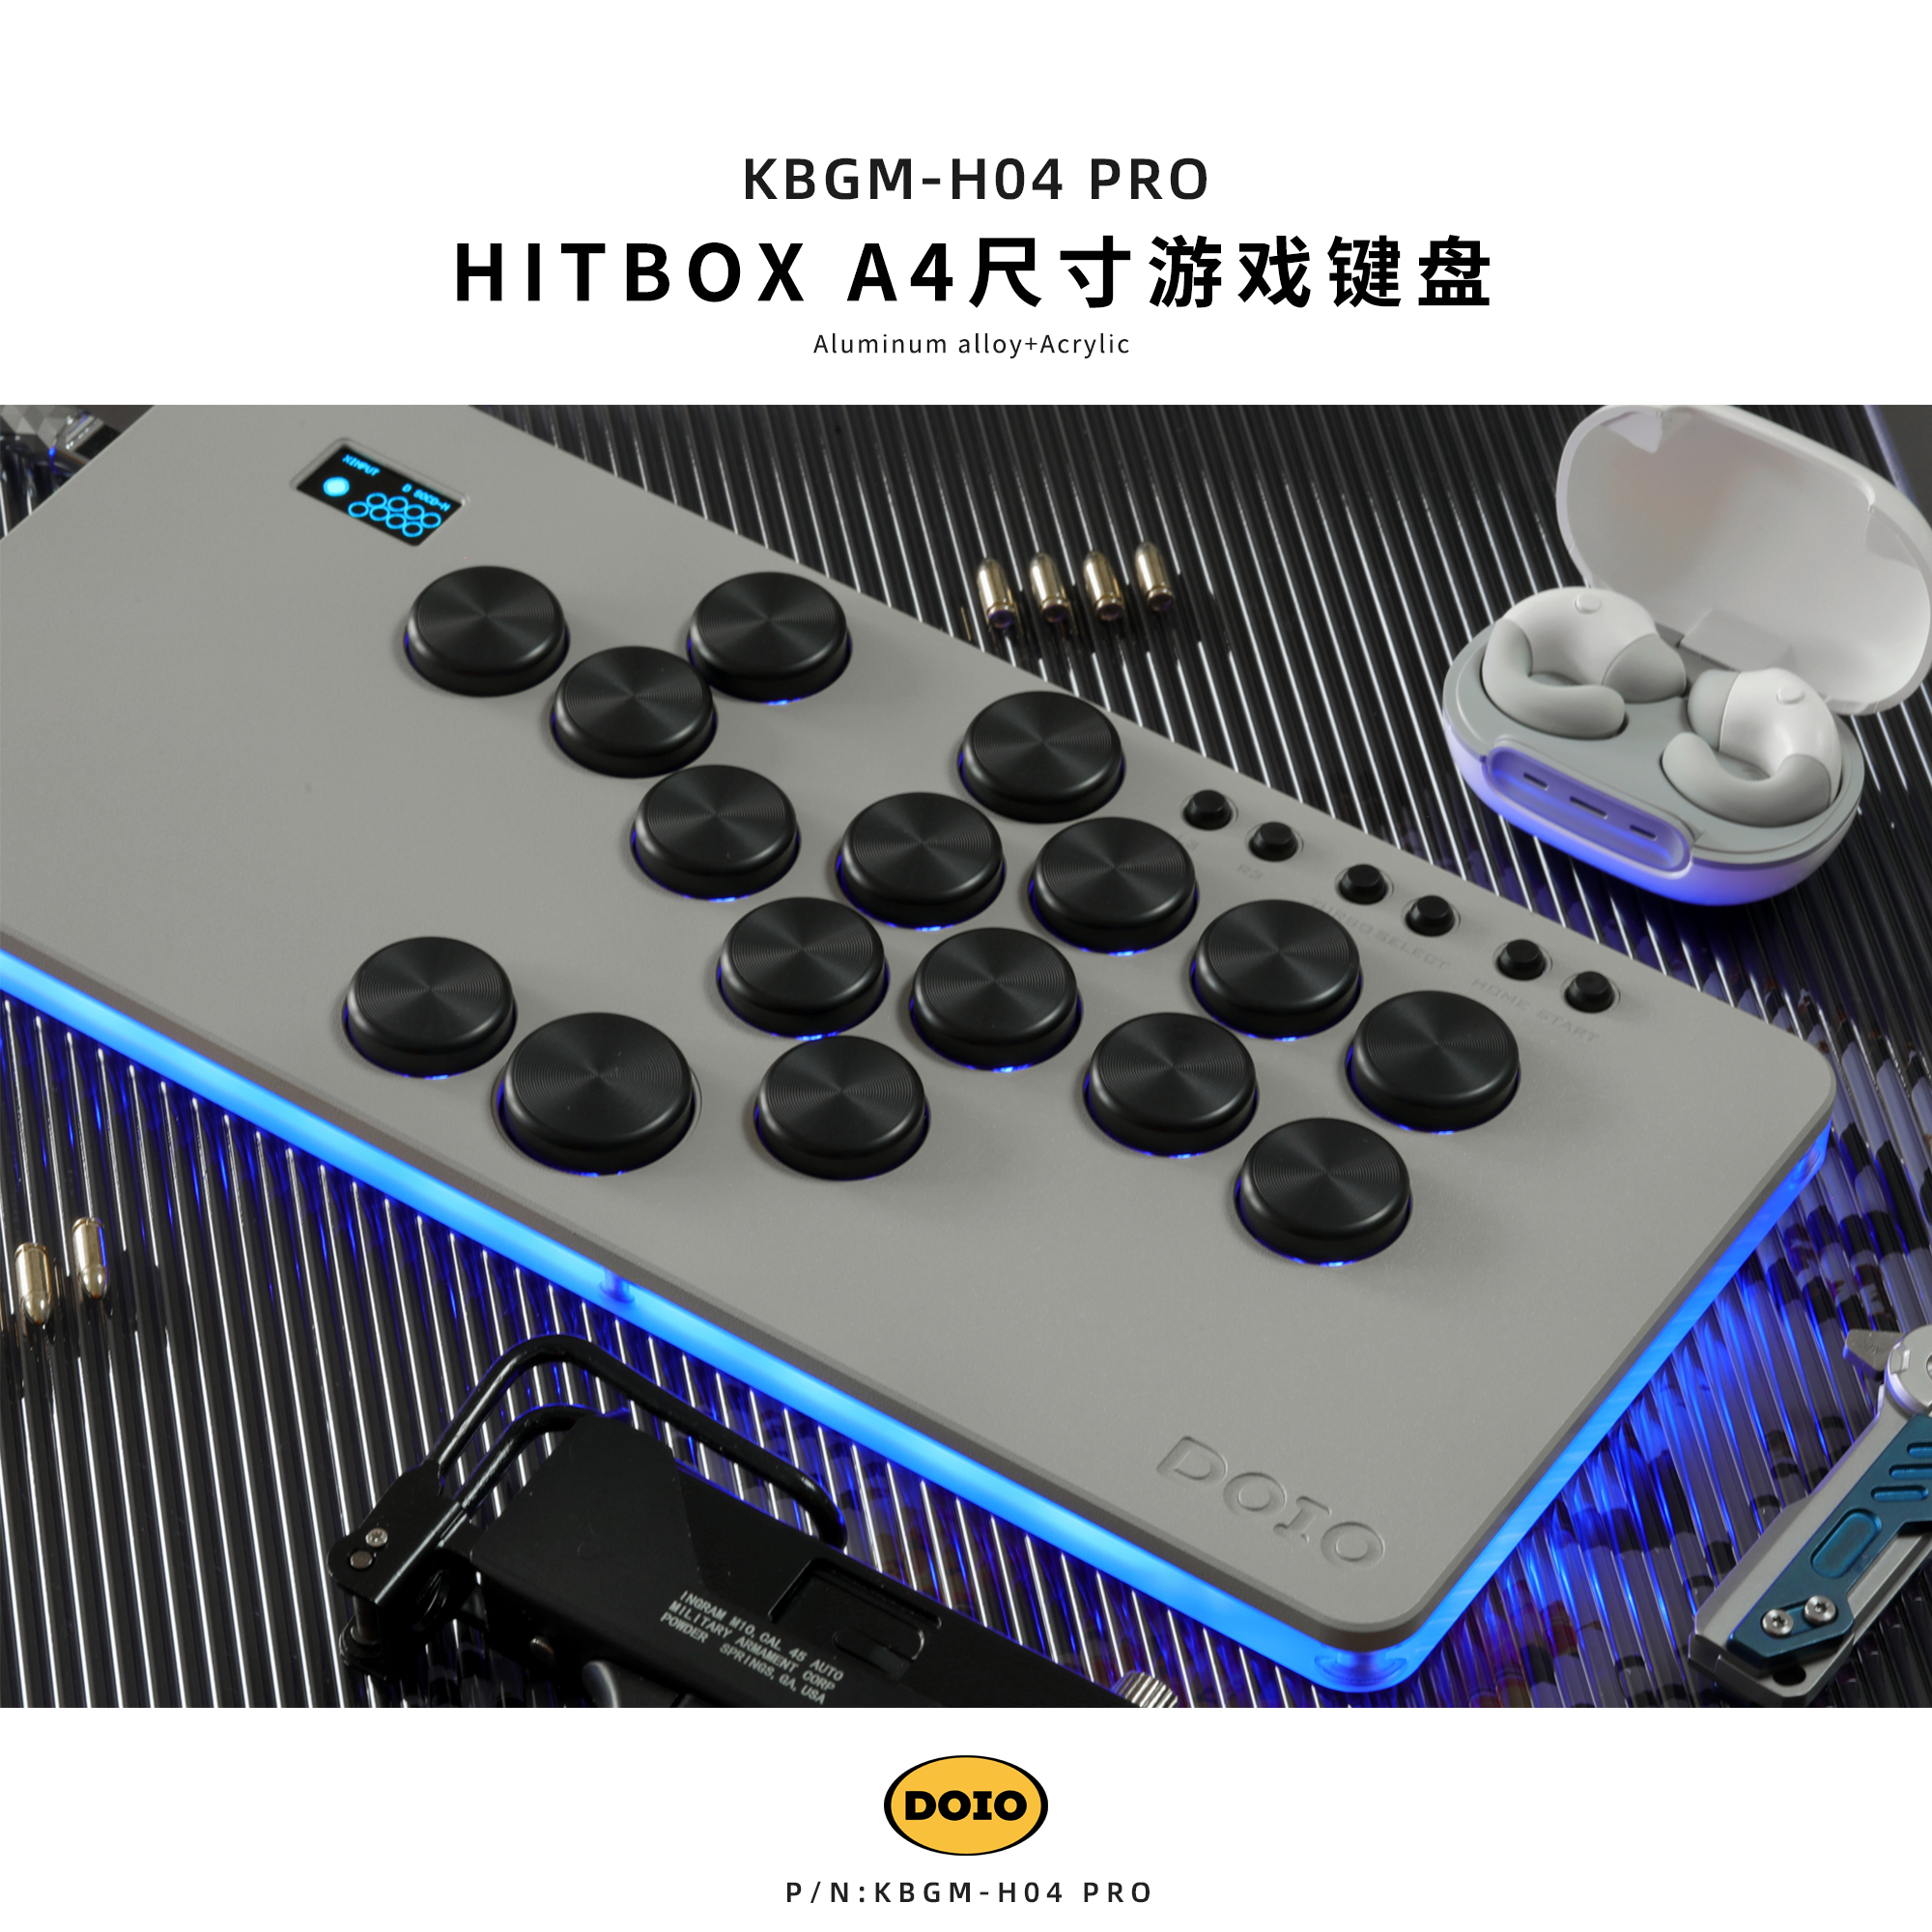 HITBOX 铝合金A4大尺寸游戏键盘 KBGM-H04